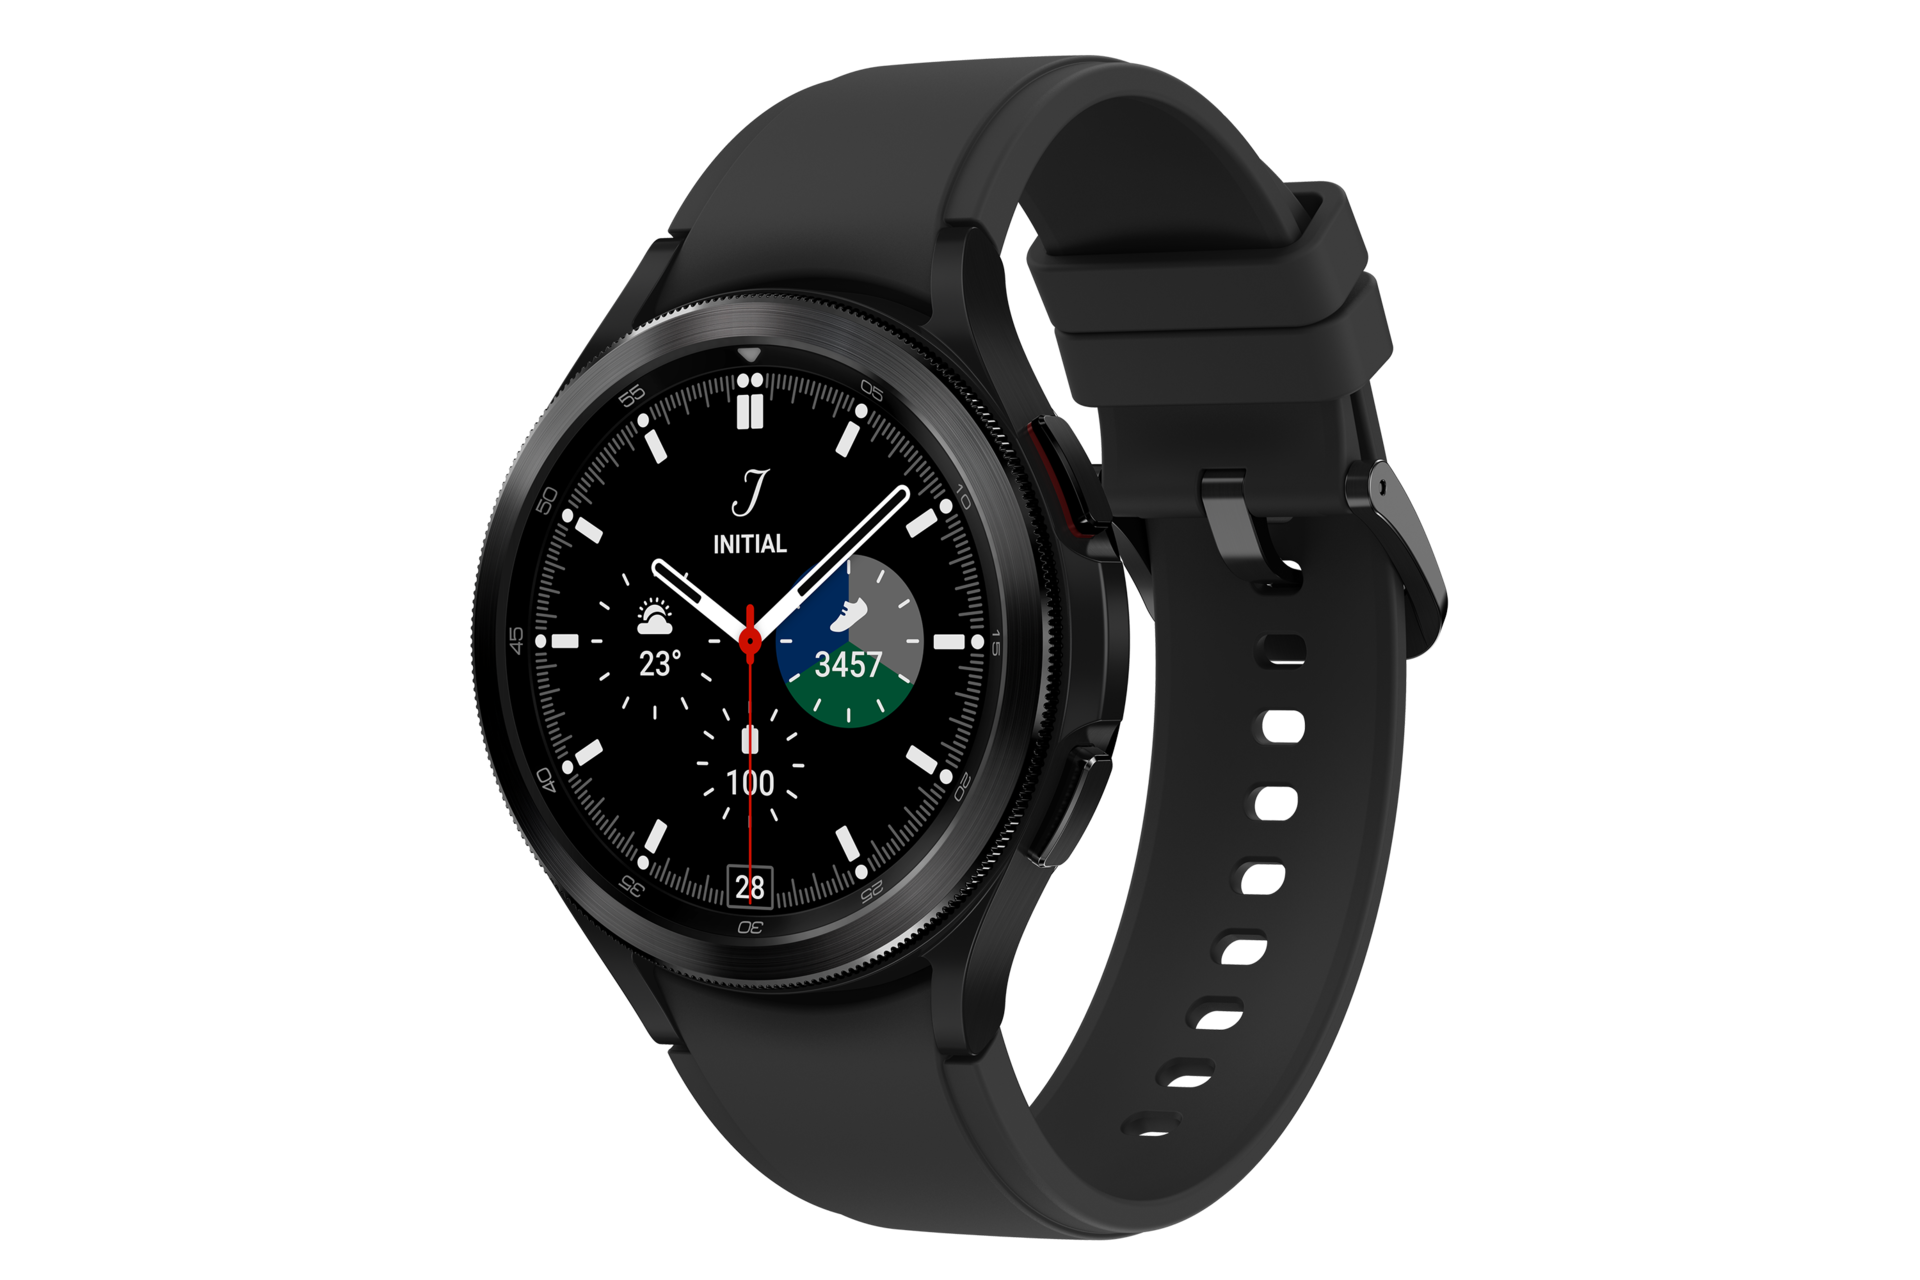 Galaxy Watch4 Classic Bluetooth mang đến cho bạn những trải nghiệm độc đáo với khả năng kết nối Bluetooth tiên tiến. Xem ảnh để hiểu rõ hơn về tính năng này và khám phá tất cả những điều thú vị mà chiếc đồng hồ này có thể mang lại cho bạn.